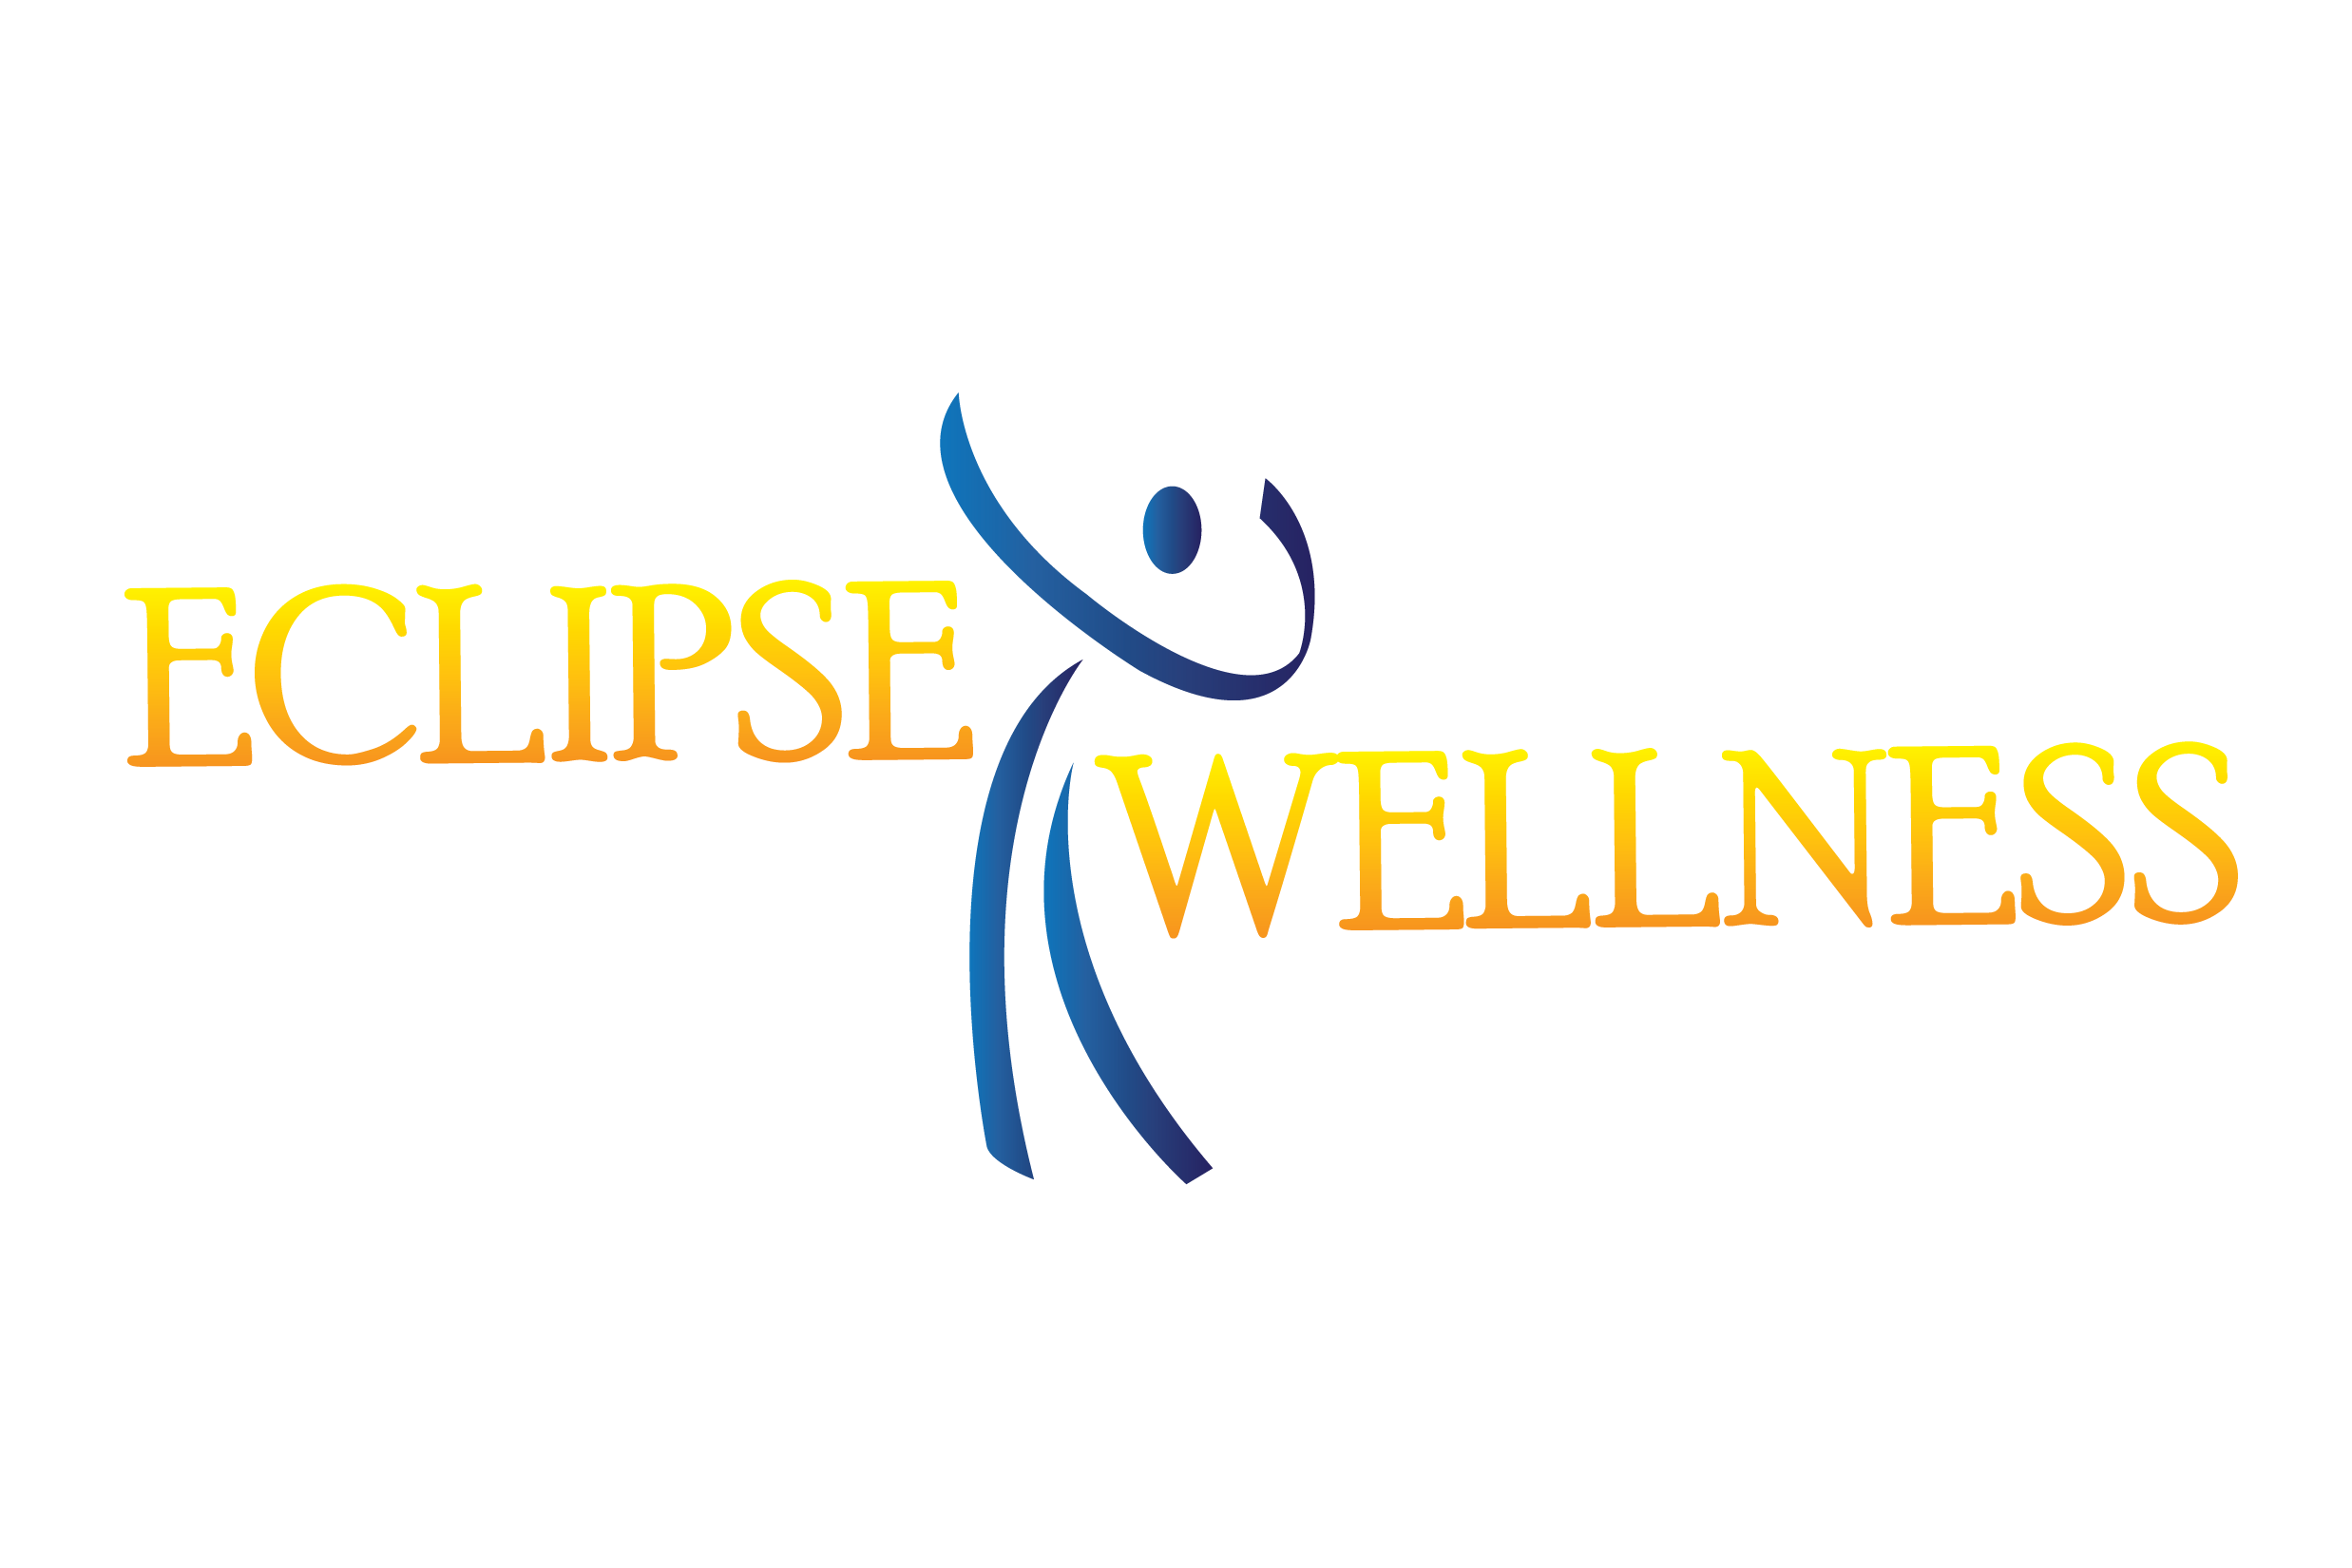 STOTT PILATES ® - Eclipse Wellness, Houston, TX